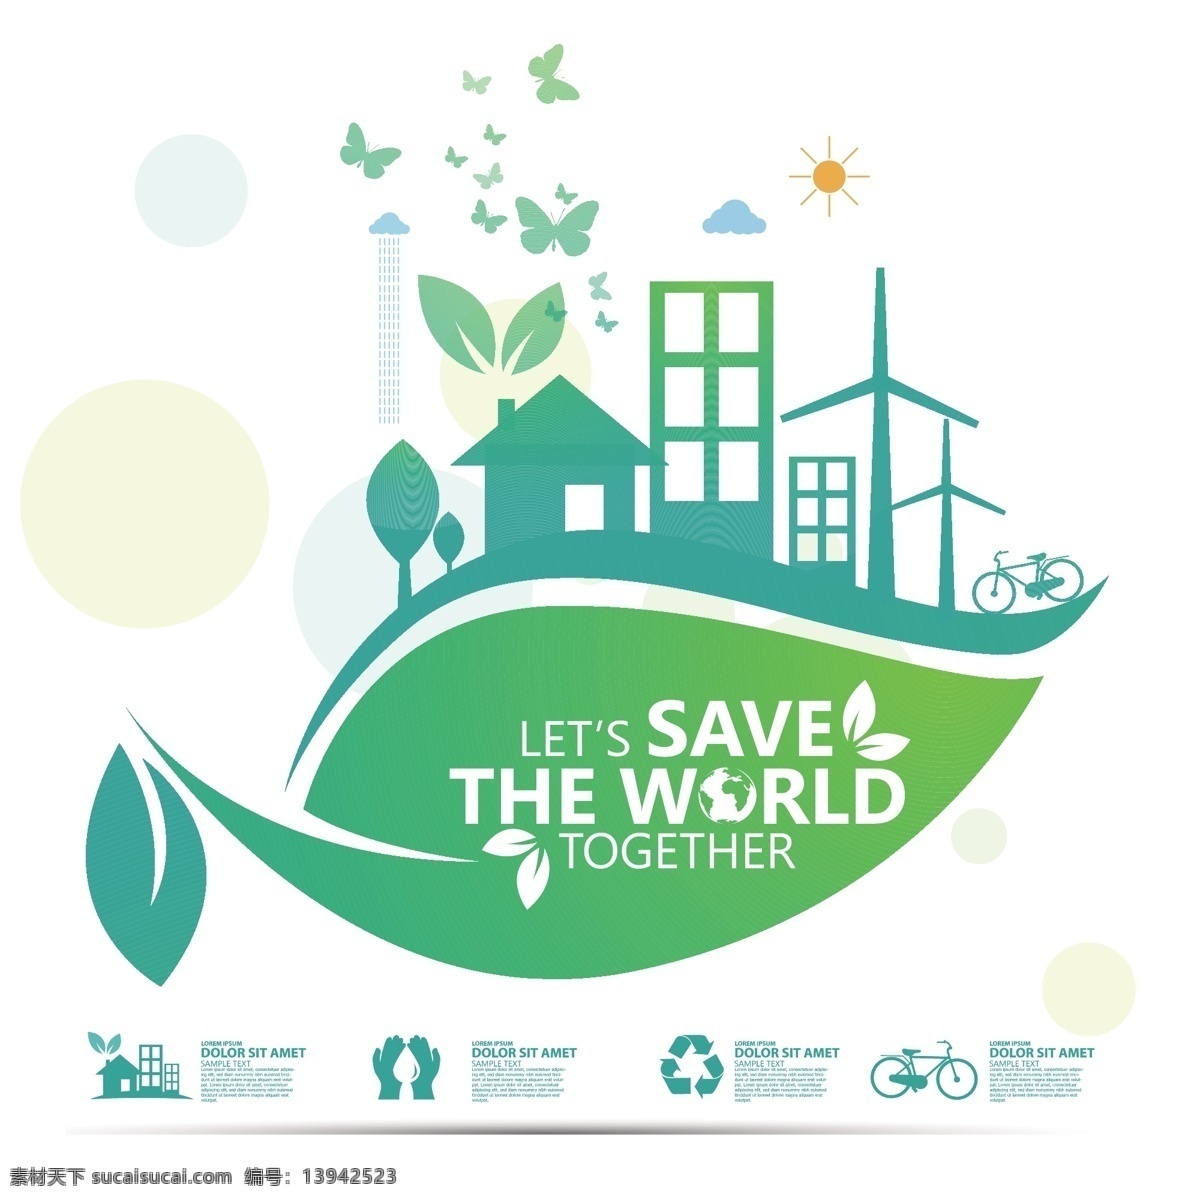 绿化 城市 环境保护 手机生态 自然 叶子 环保 标志 环保图标 环保按扭 图标 能源 节能环保 生态 保护环境 绿色 绿色环保